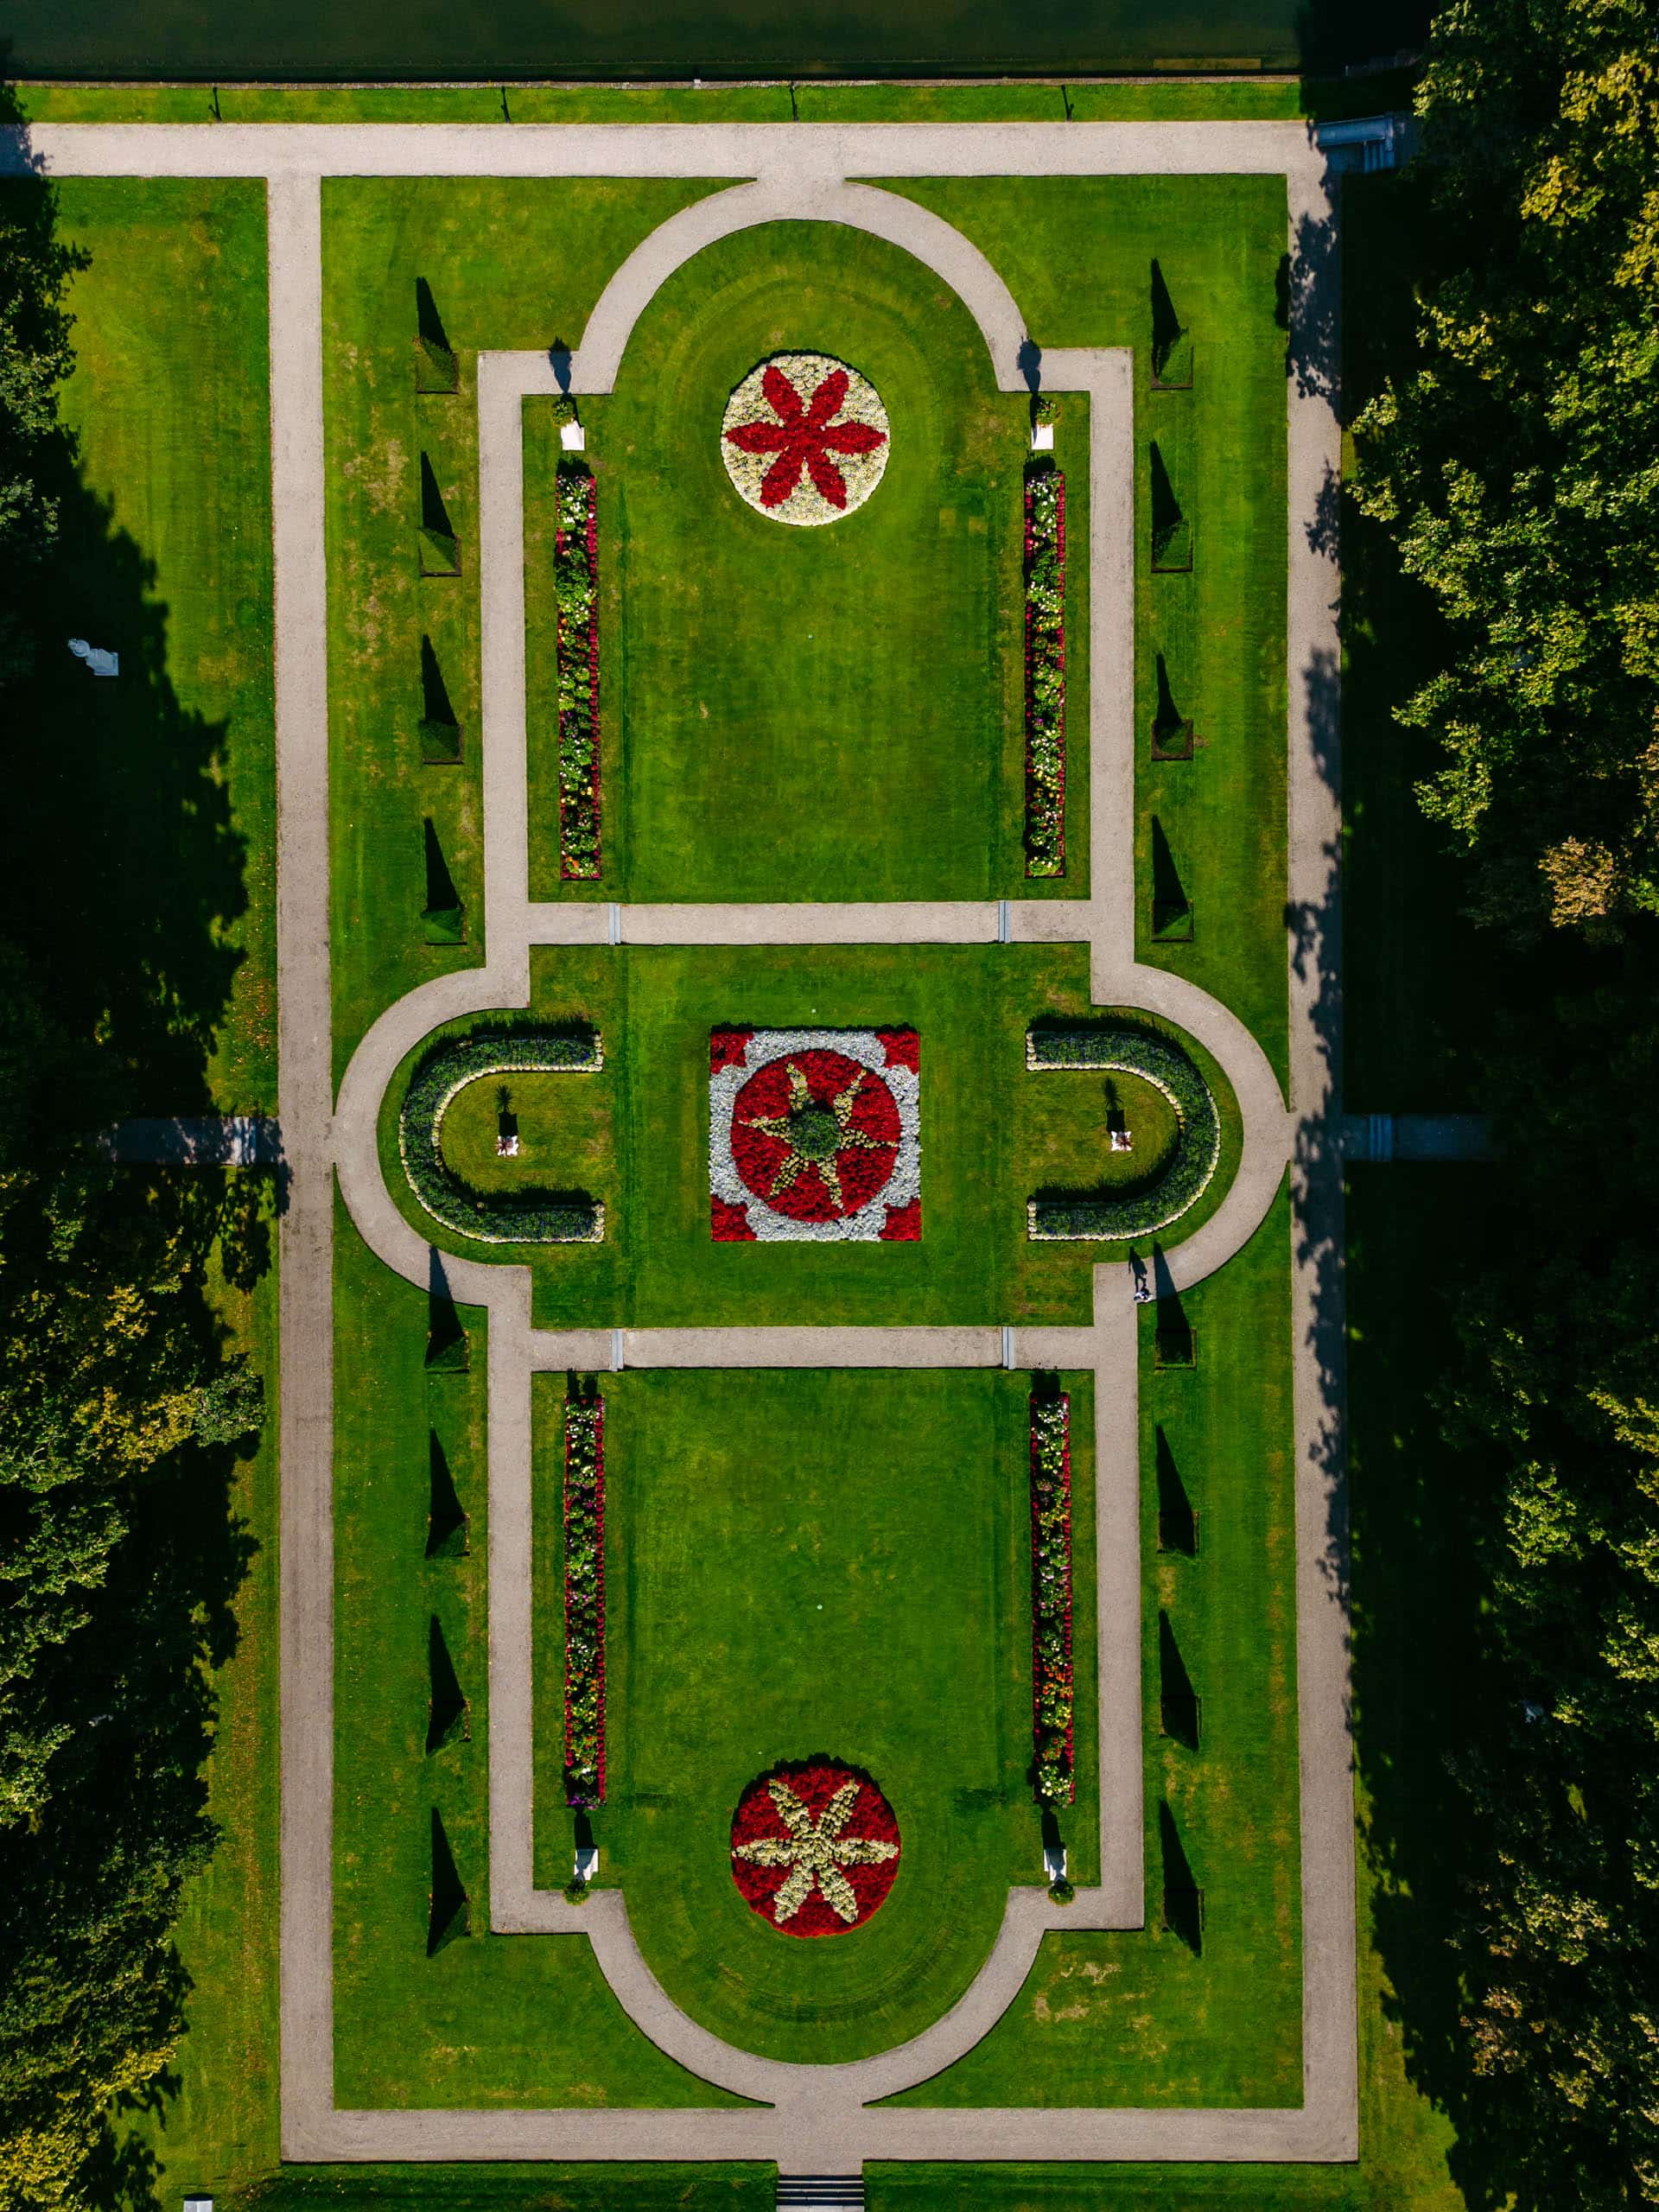 Luchtfoto van Kasteel de haar in een park.